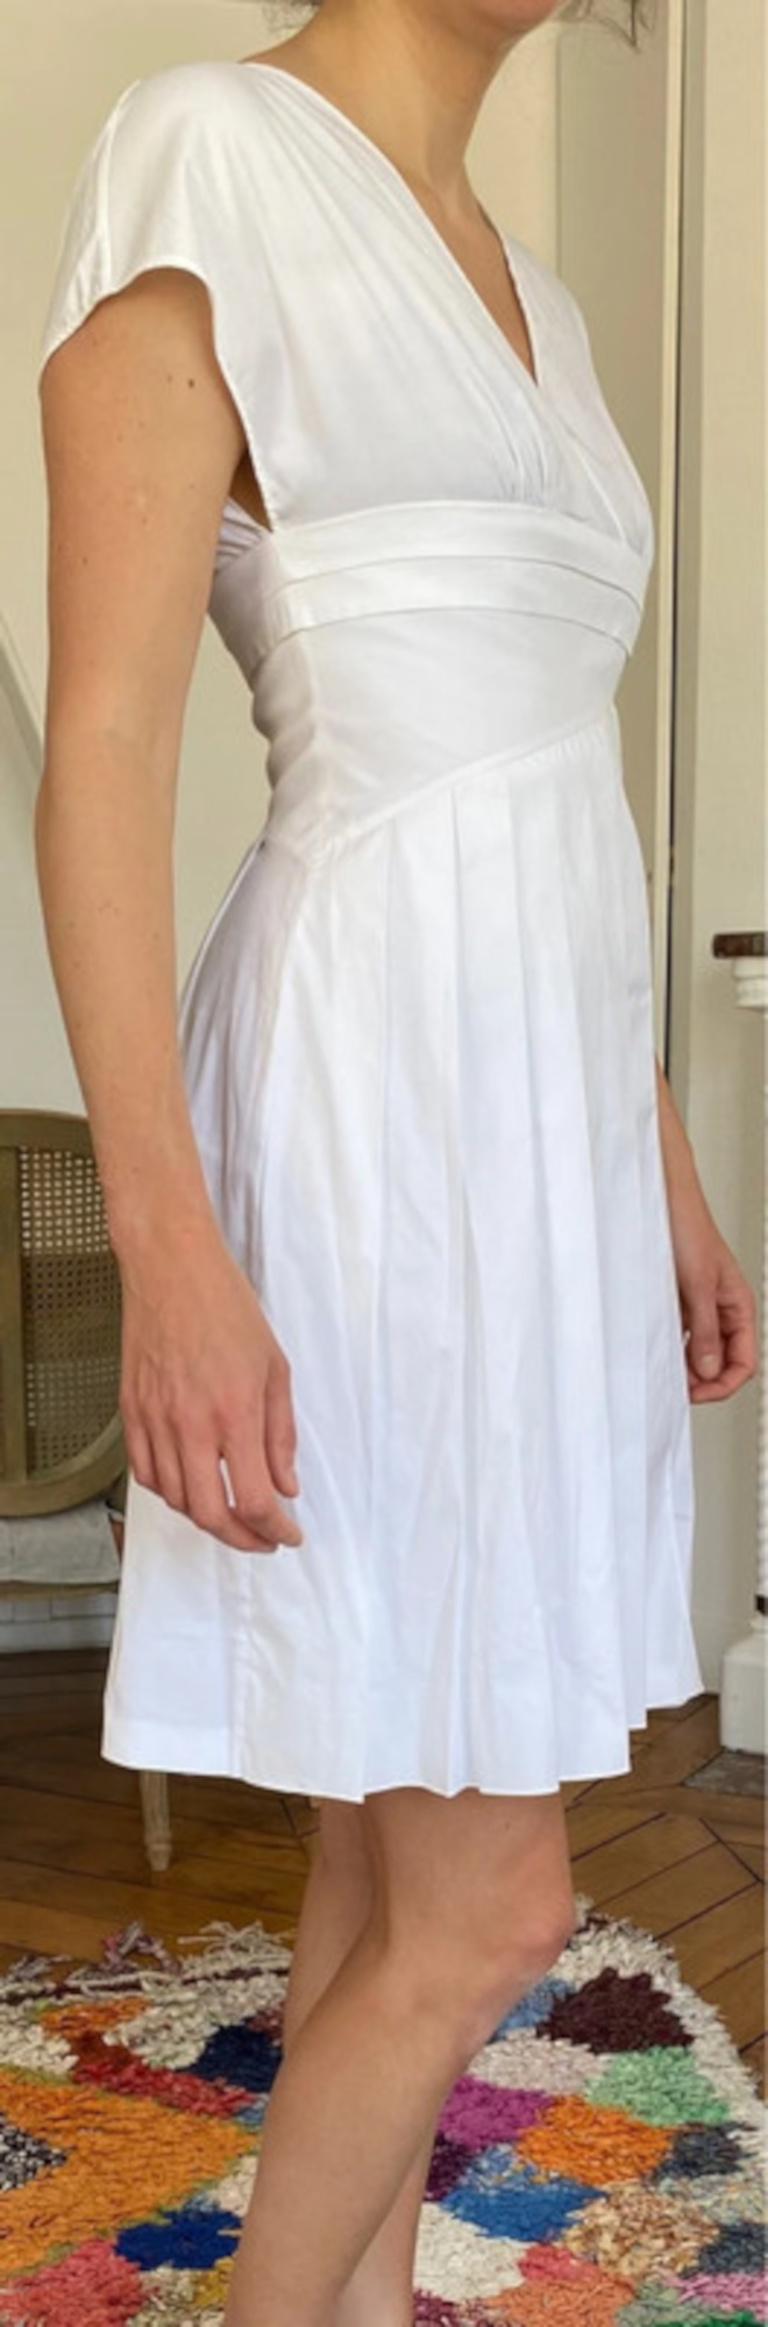 Women's CHRISTIAN DIOR - Vintage White Cotton Pleated Midi Dress  Size 6US 38EU